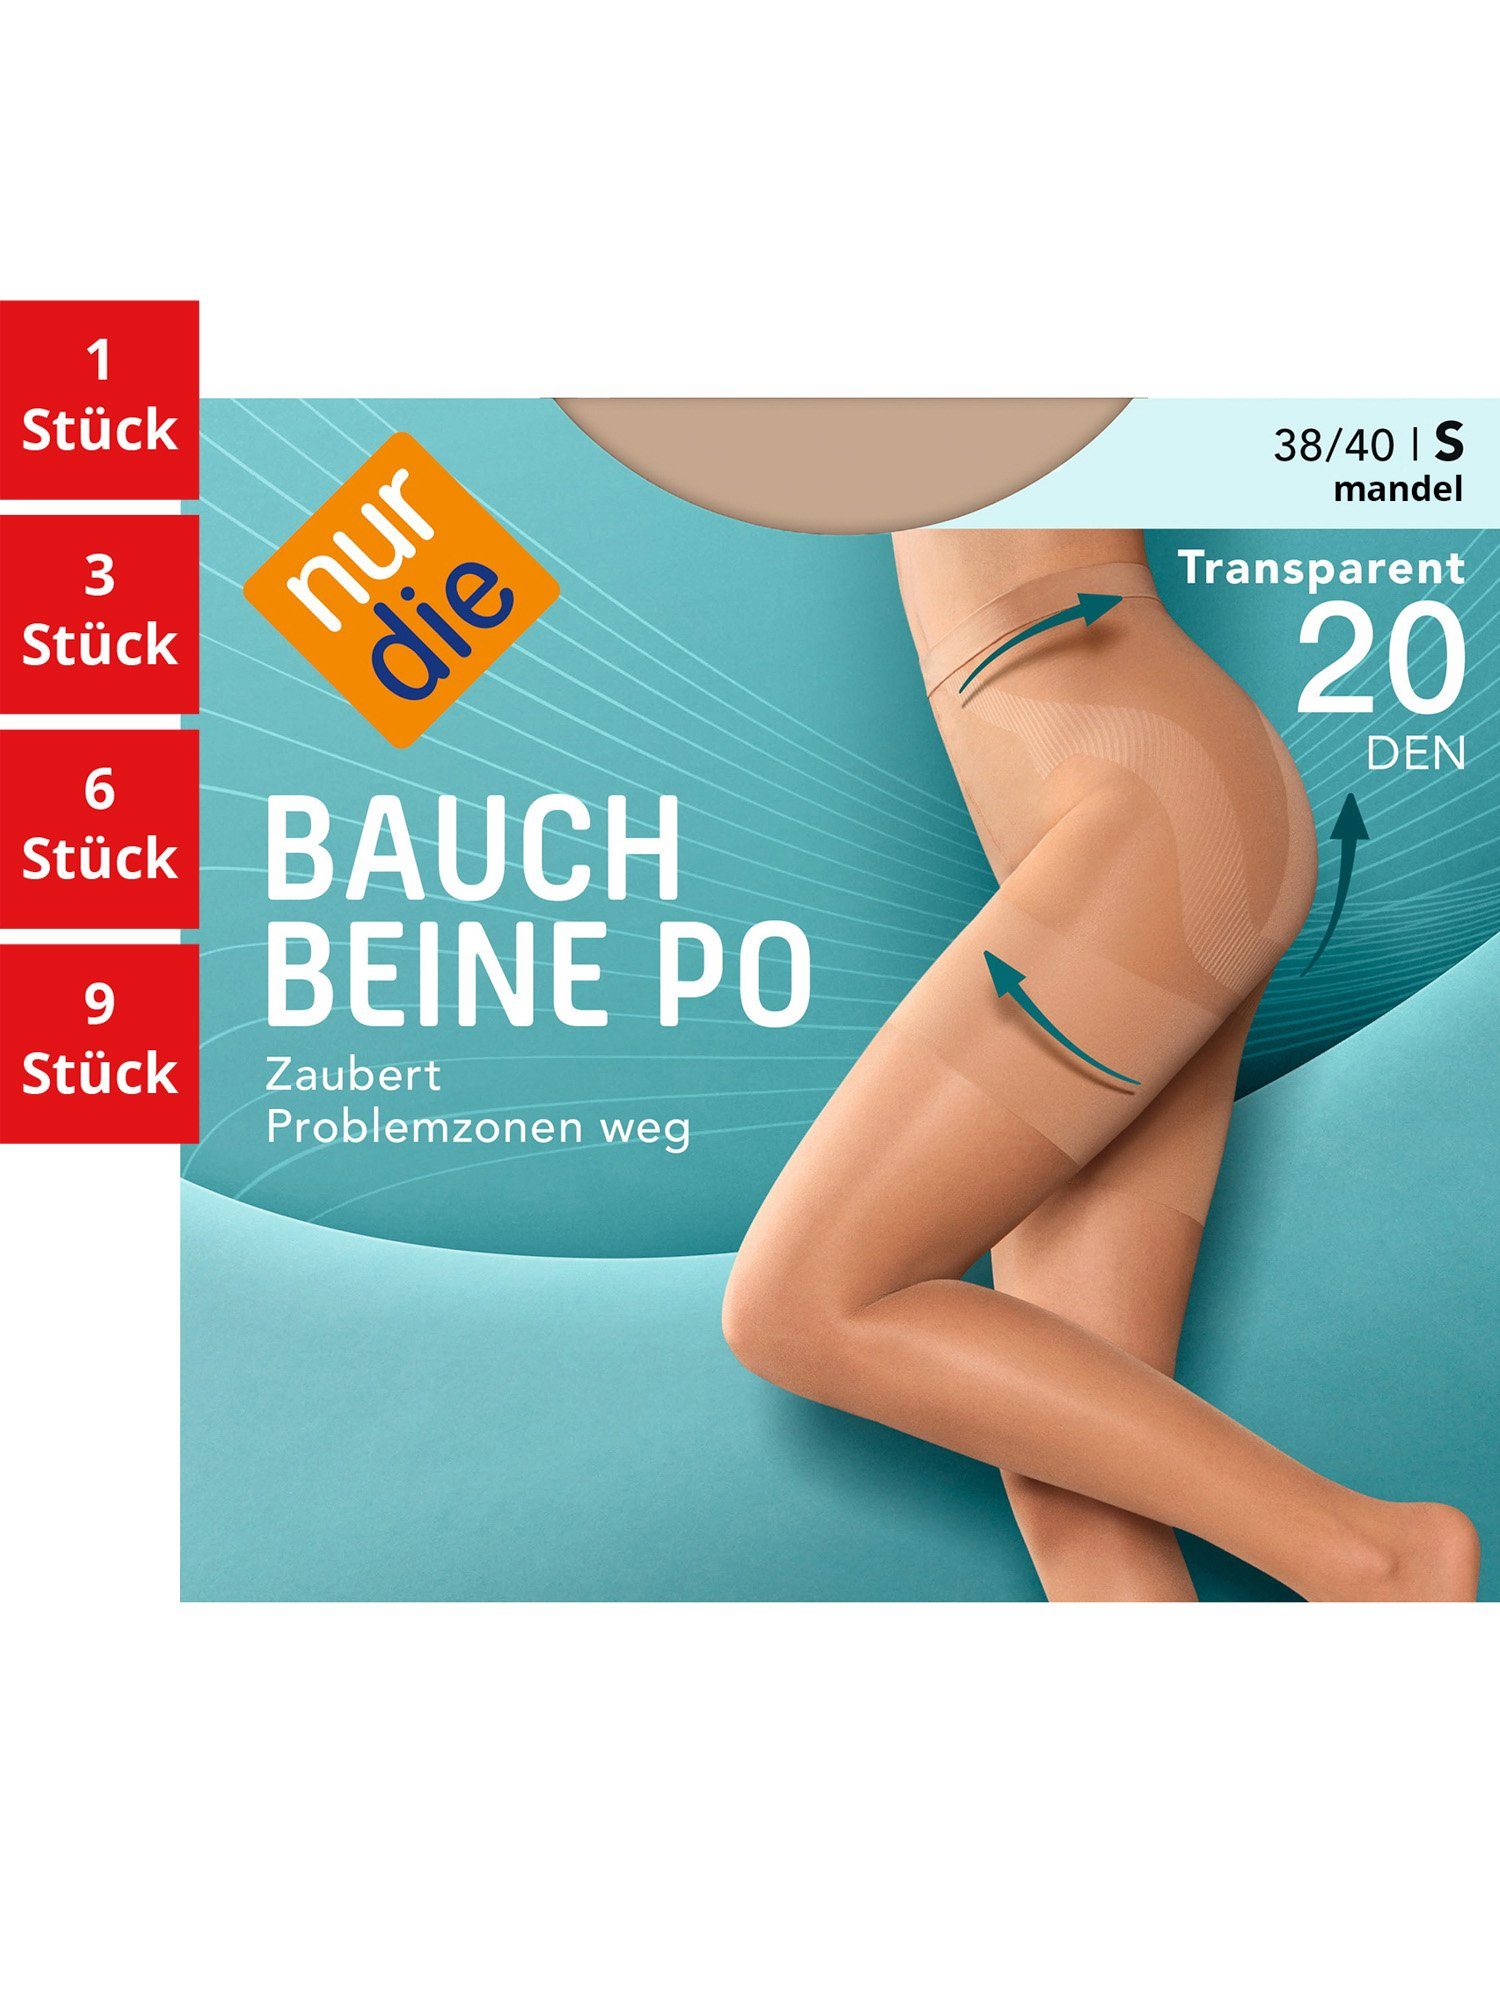 Nur Die Feinstrumpfhose Bauch-Beine-Po 1 Pack DEN transparent multi-pack Damen nylon St) 20 frauen durchsichtig (1er/3er/6er/9er Fein-strumpfhose